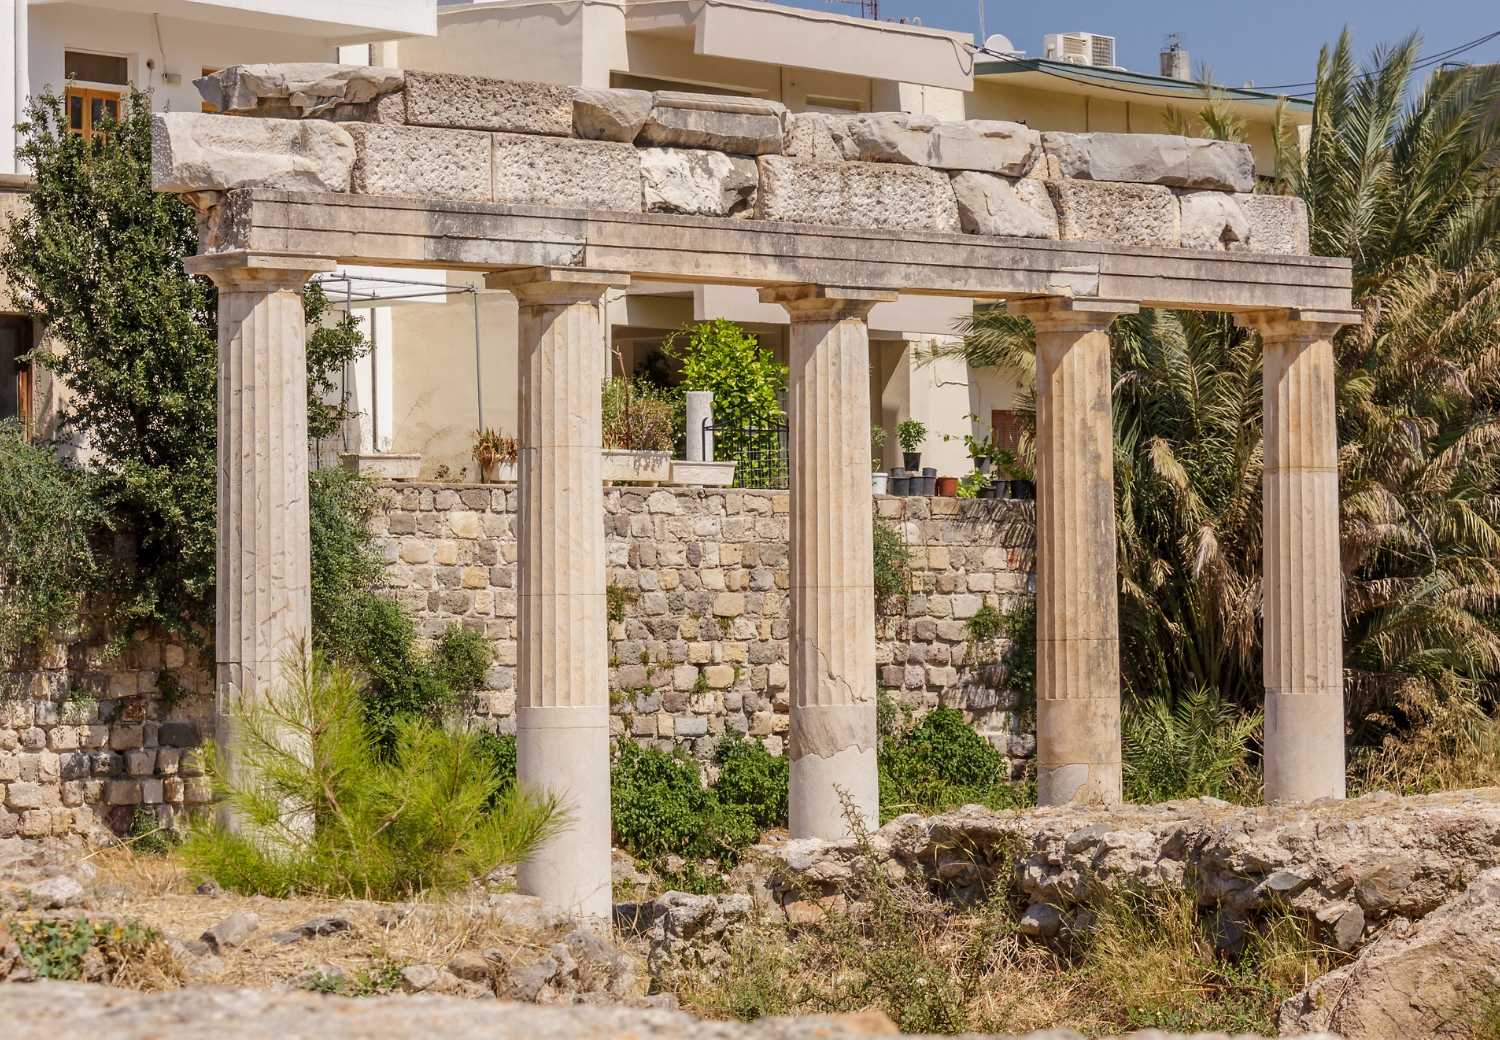 ביקור באתר היסטורי האגורה העתיקה - ‪‪Ancient Agora‬‬